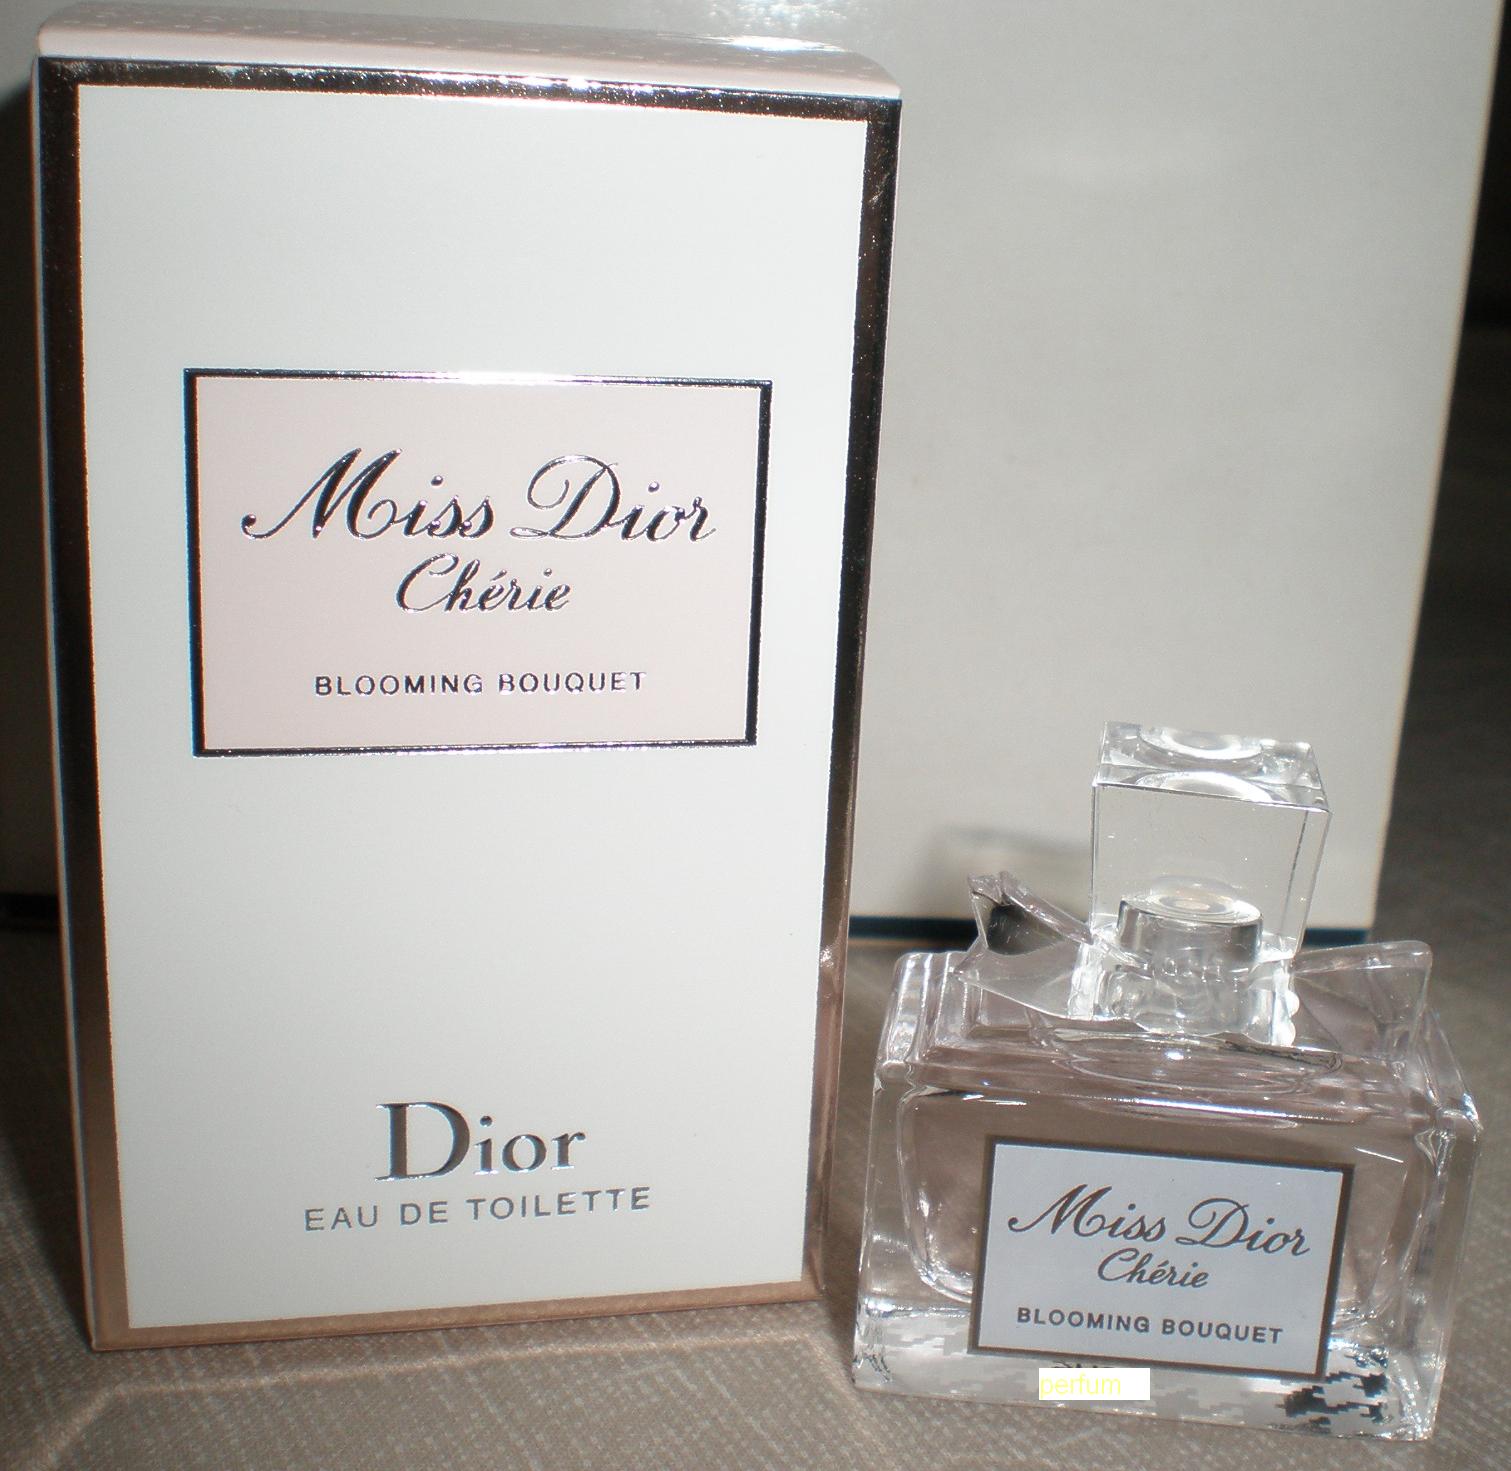 Christian Dior Makeup, Skincare and Perfume!: Christian Dior Fragrance ...